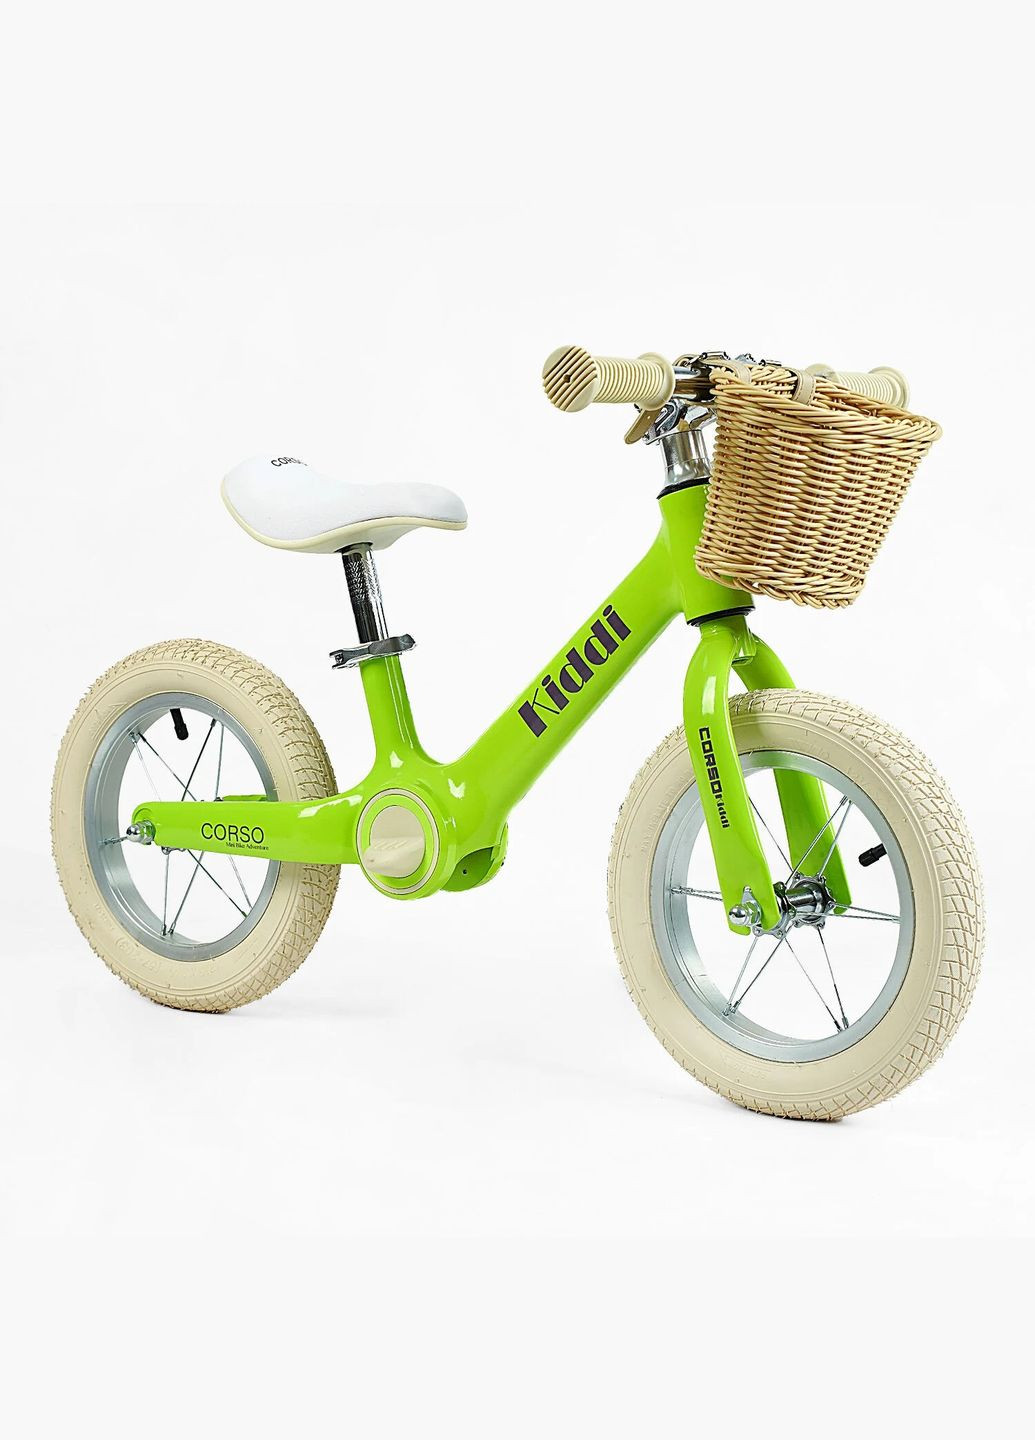 Детский велобег KIDDI ML-12328. Магниевая рама, надувные колеса 12", подставка для ног, корзина Corso (290254824)